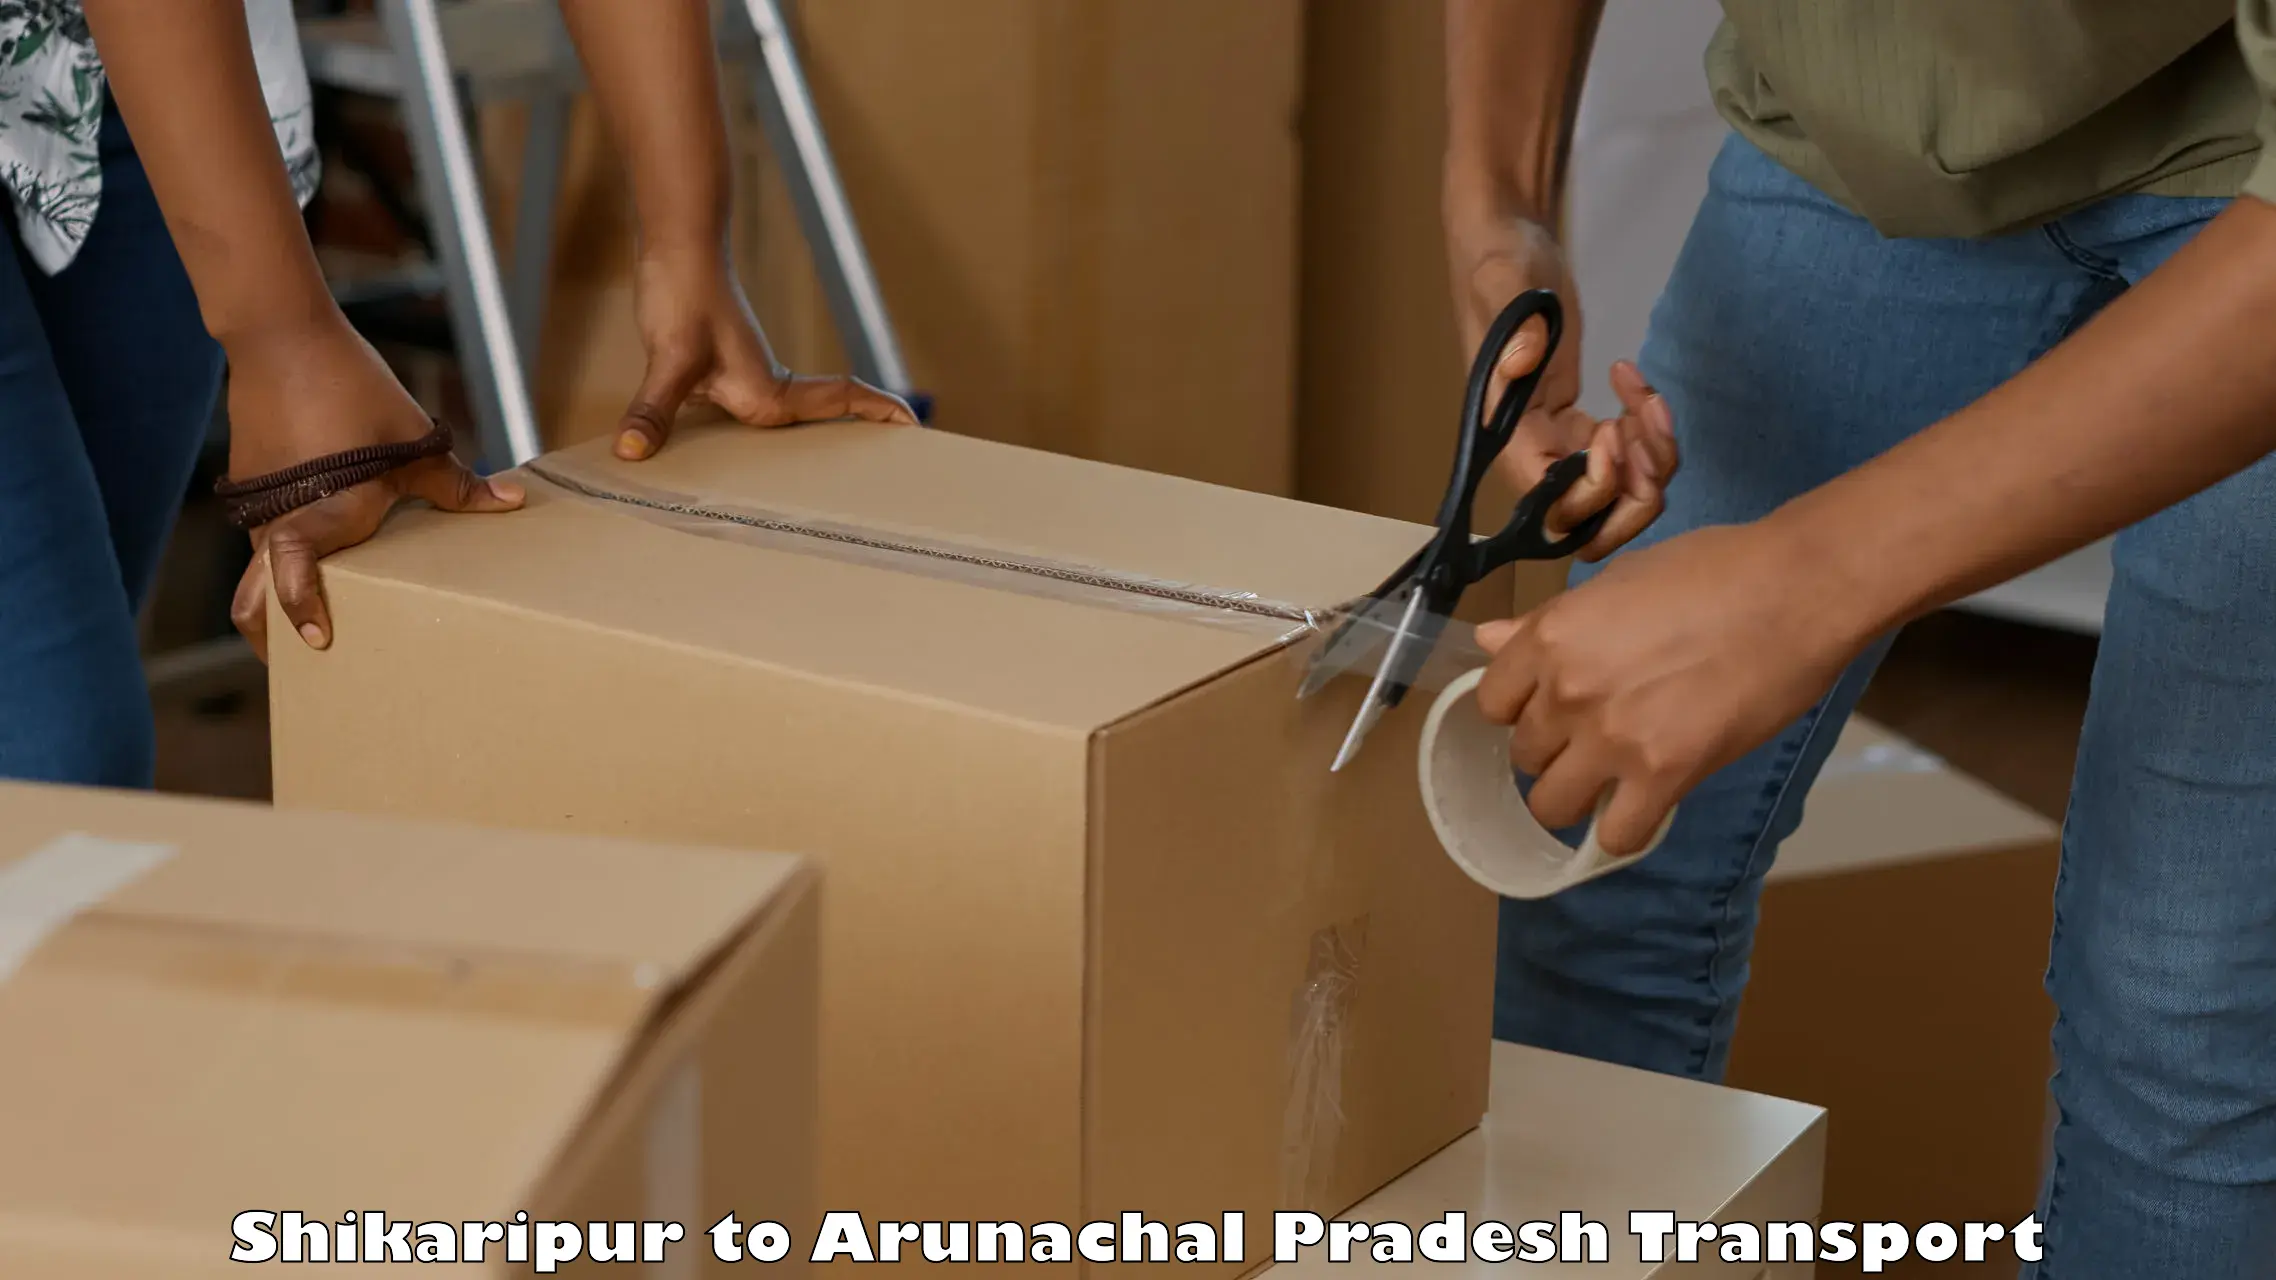 Lorry transport service Shikaripur to Nirjuli